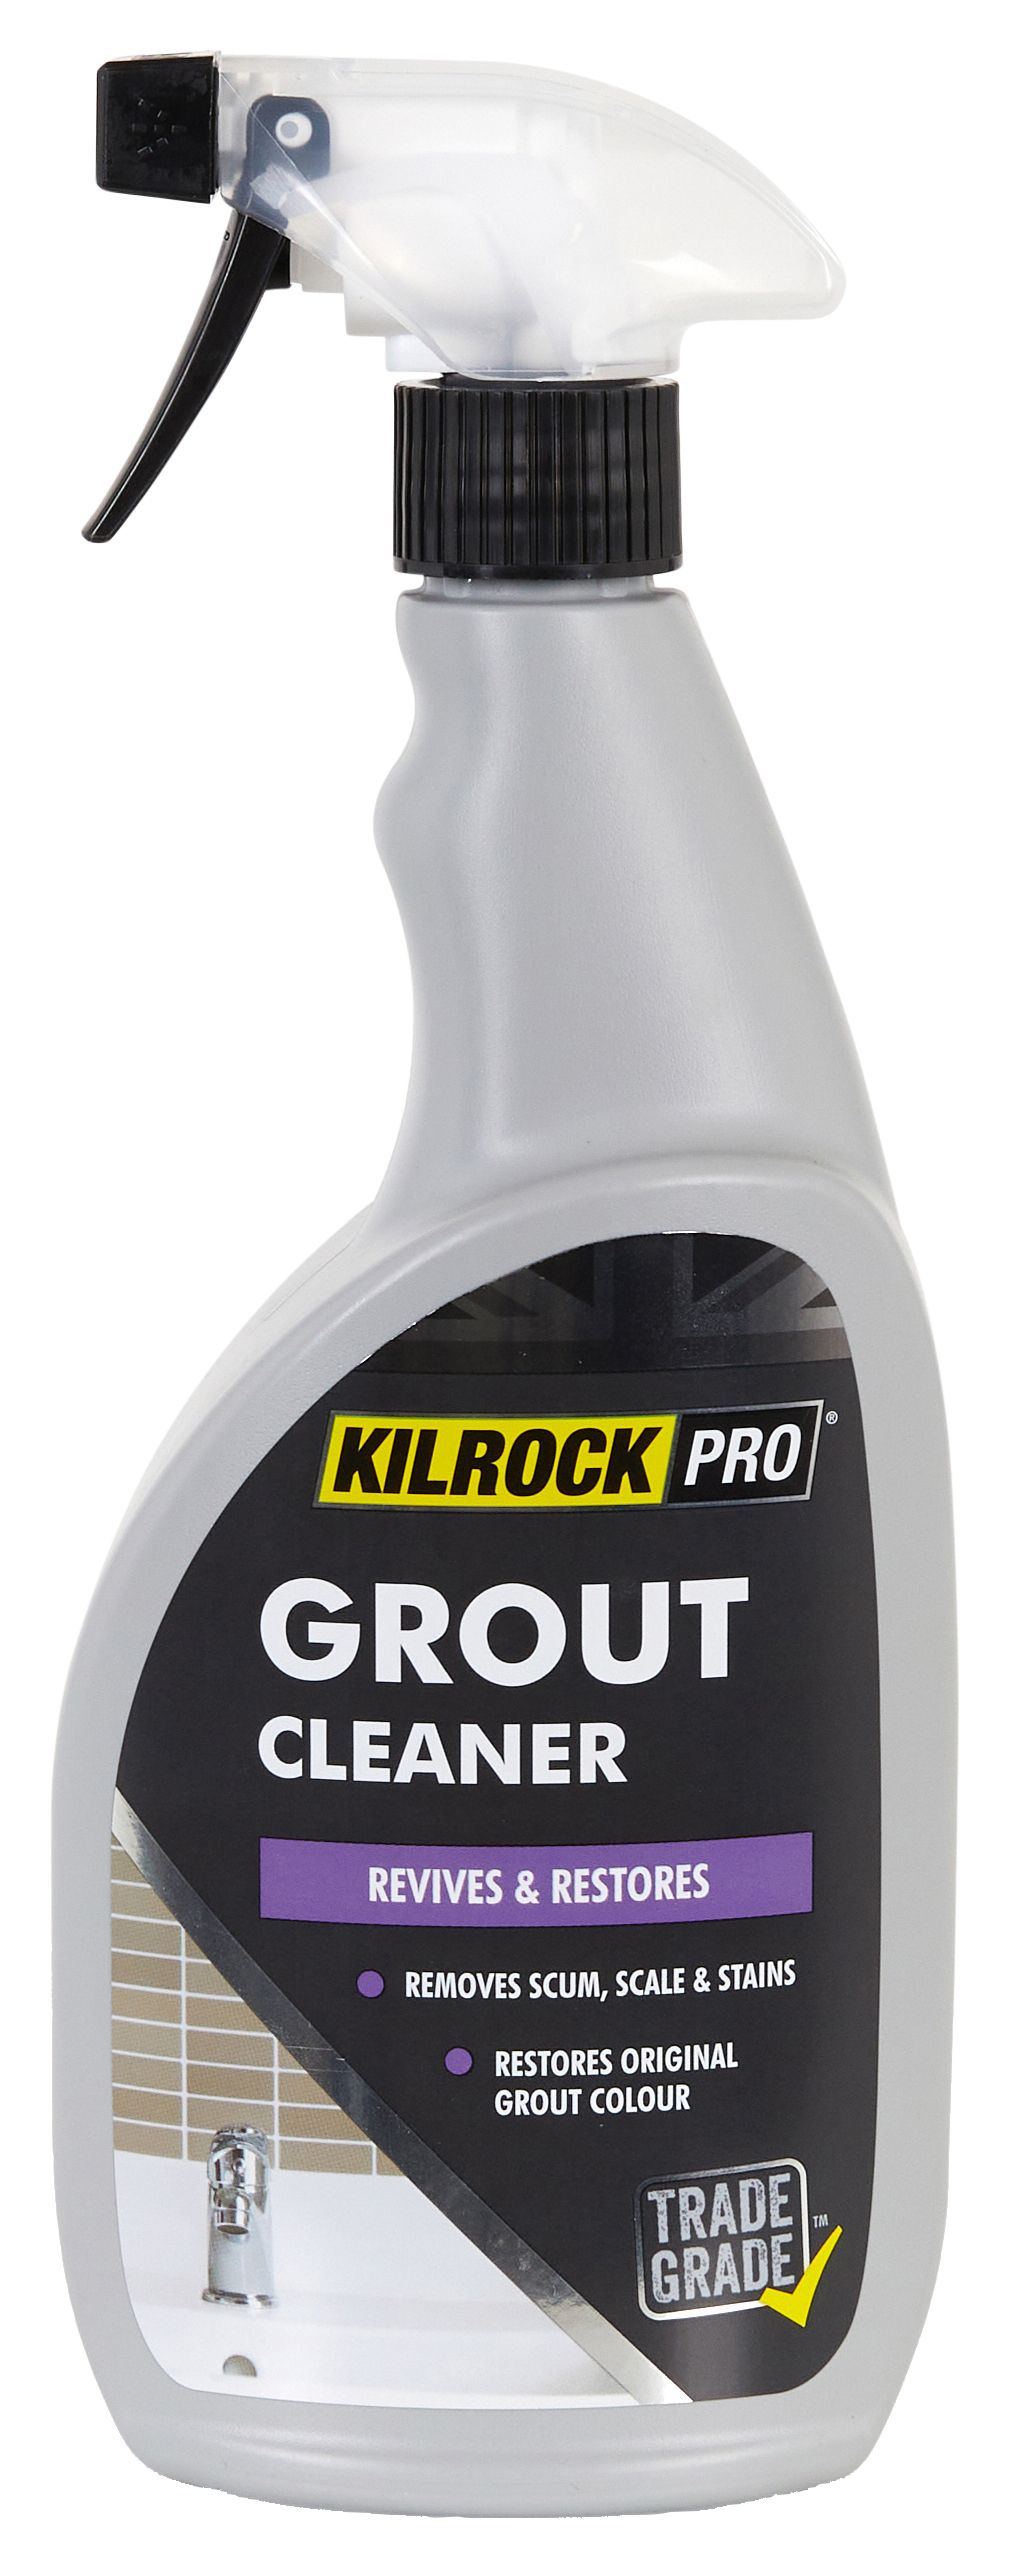 Image of KilrockPRO Grout & Tile Cleaner - 750ml